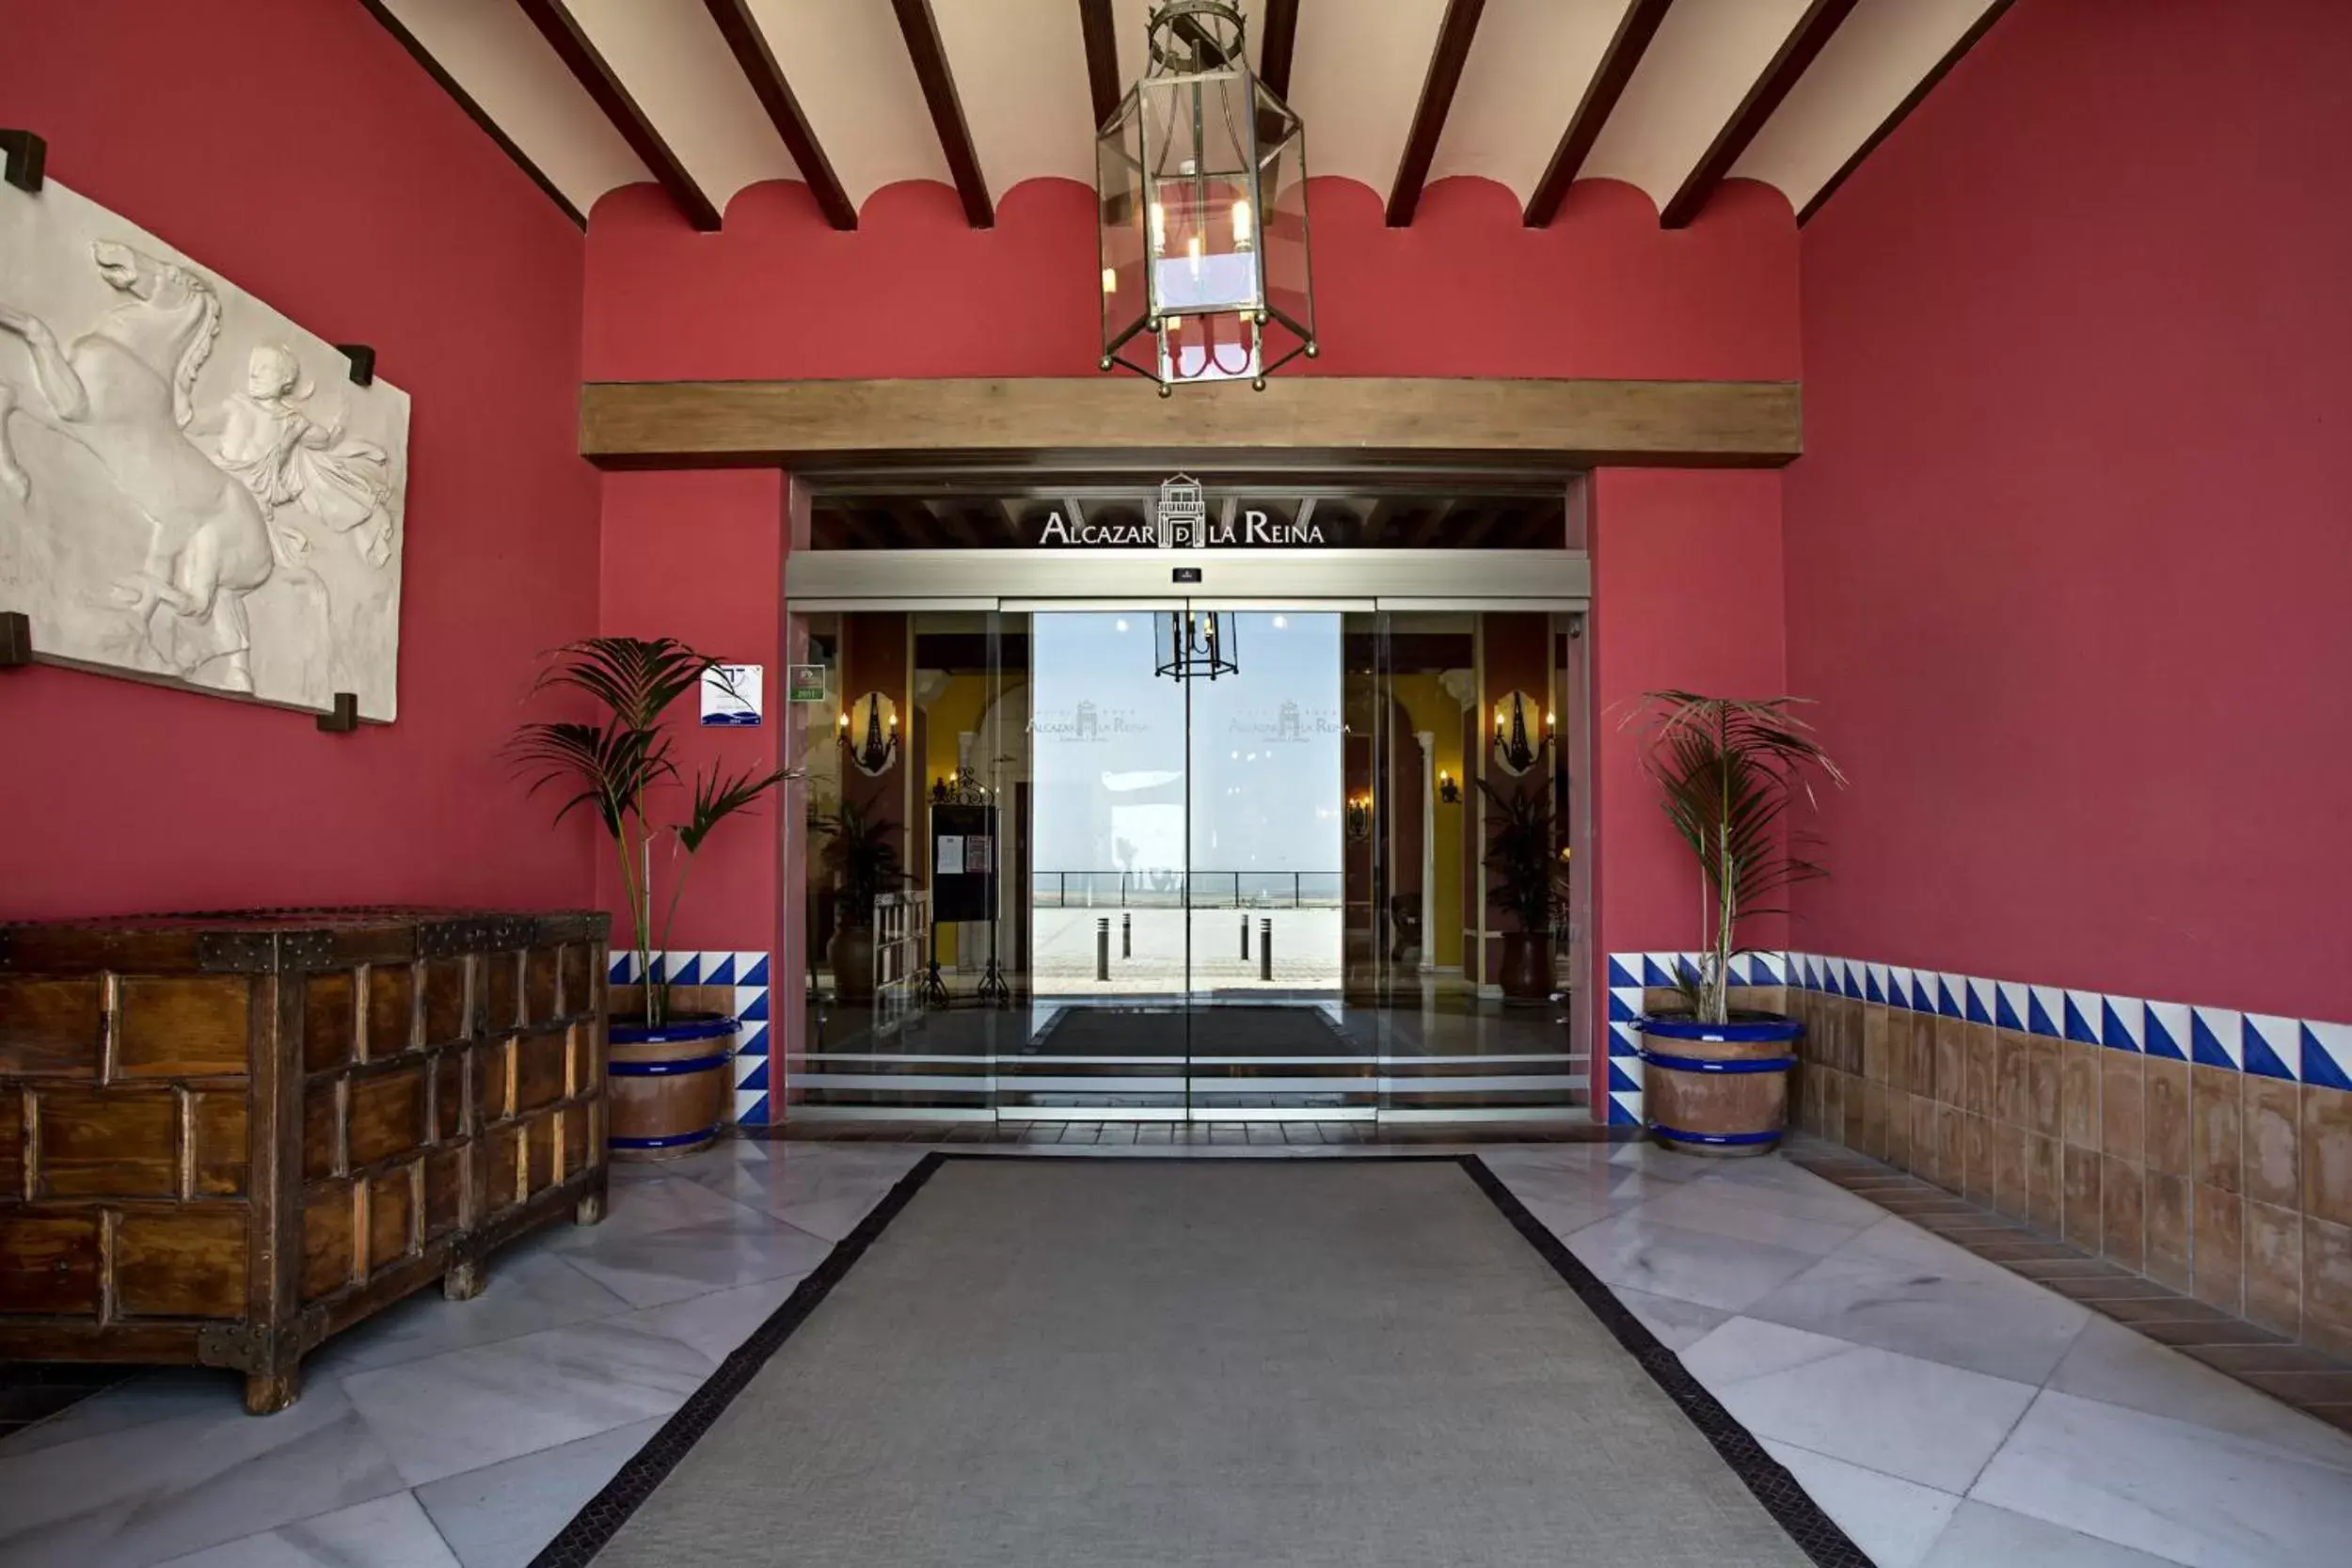 Facade/entrance in Hotel Alcázar de la Reina